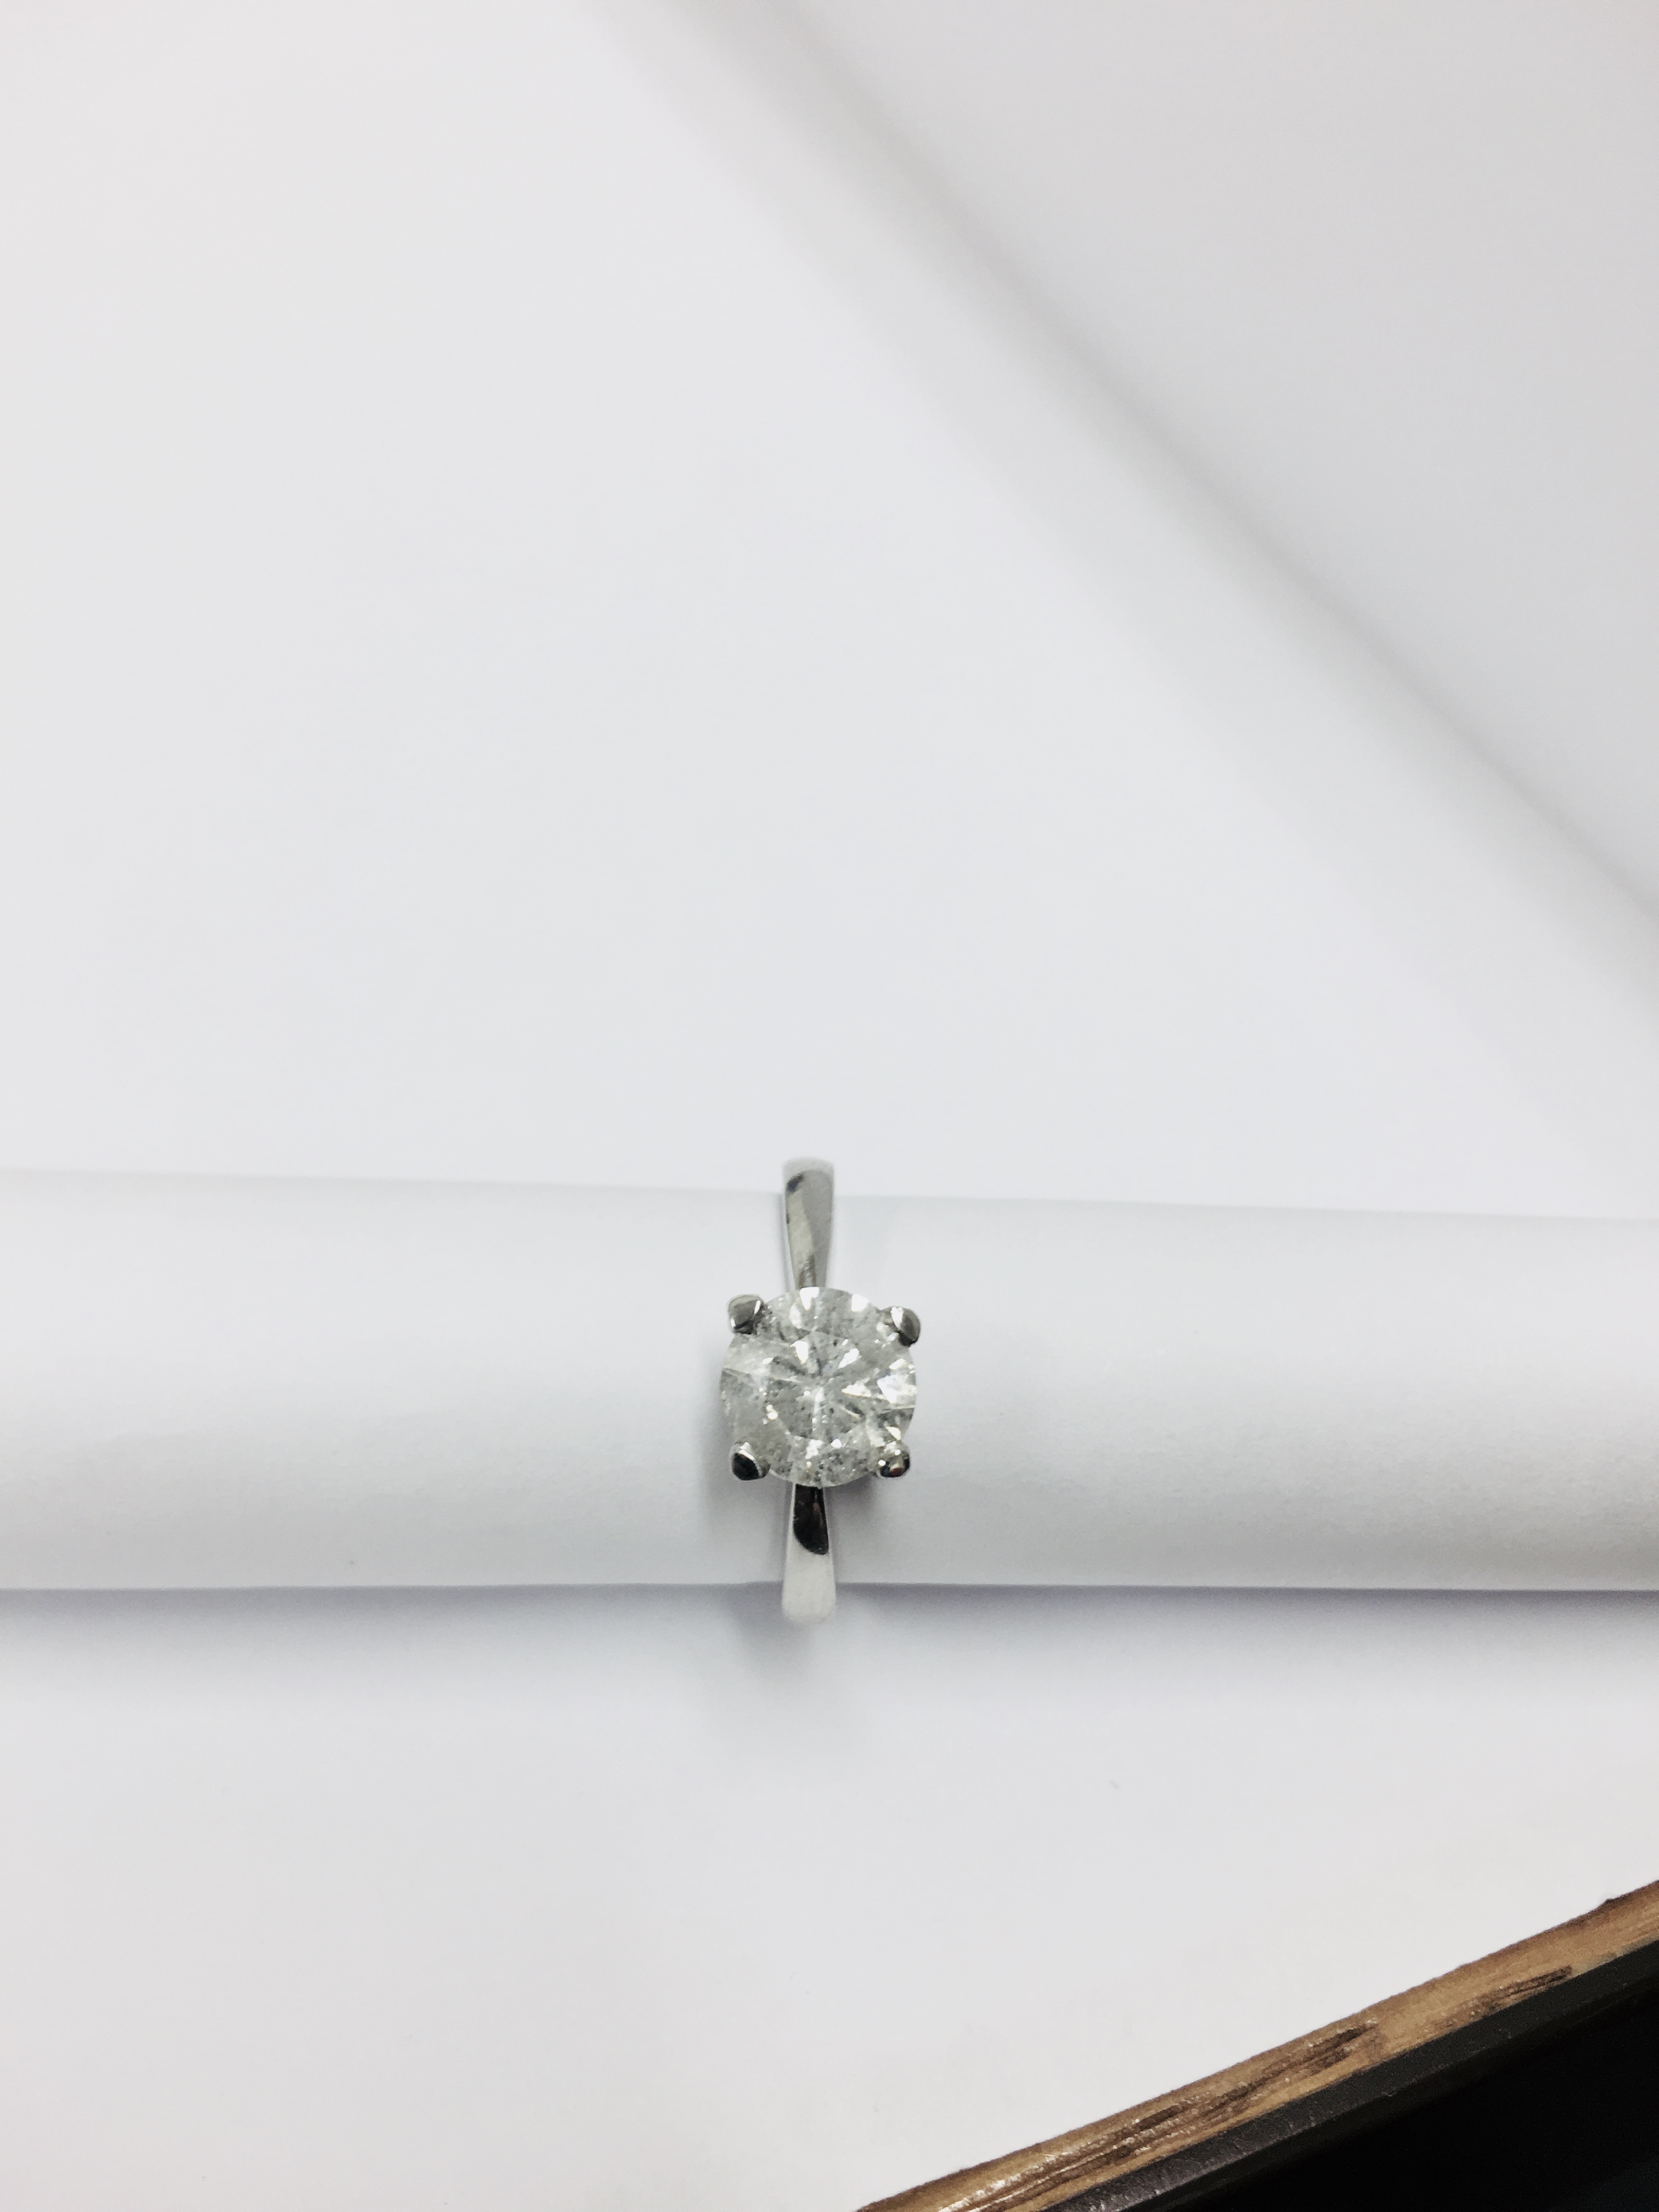 2.08ct diamond solitaire ring set in platinum